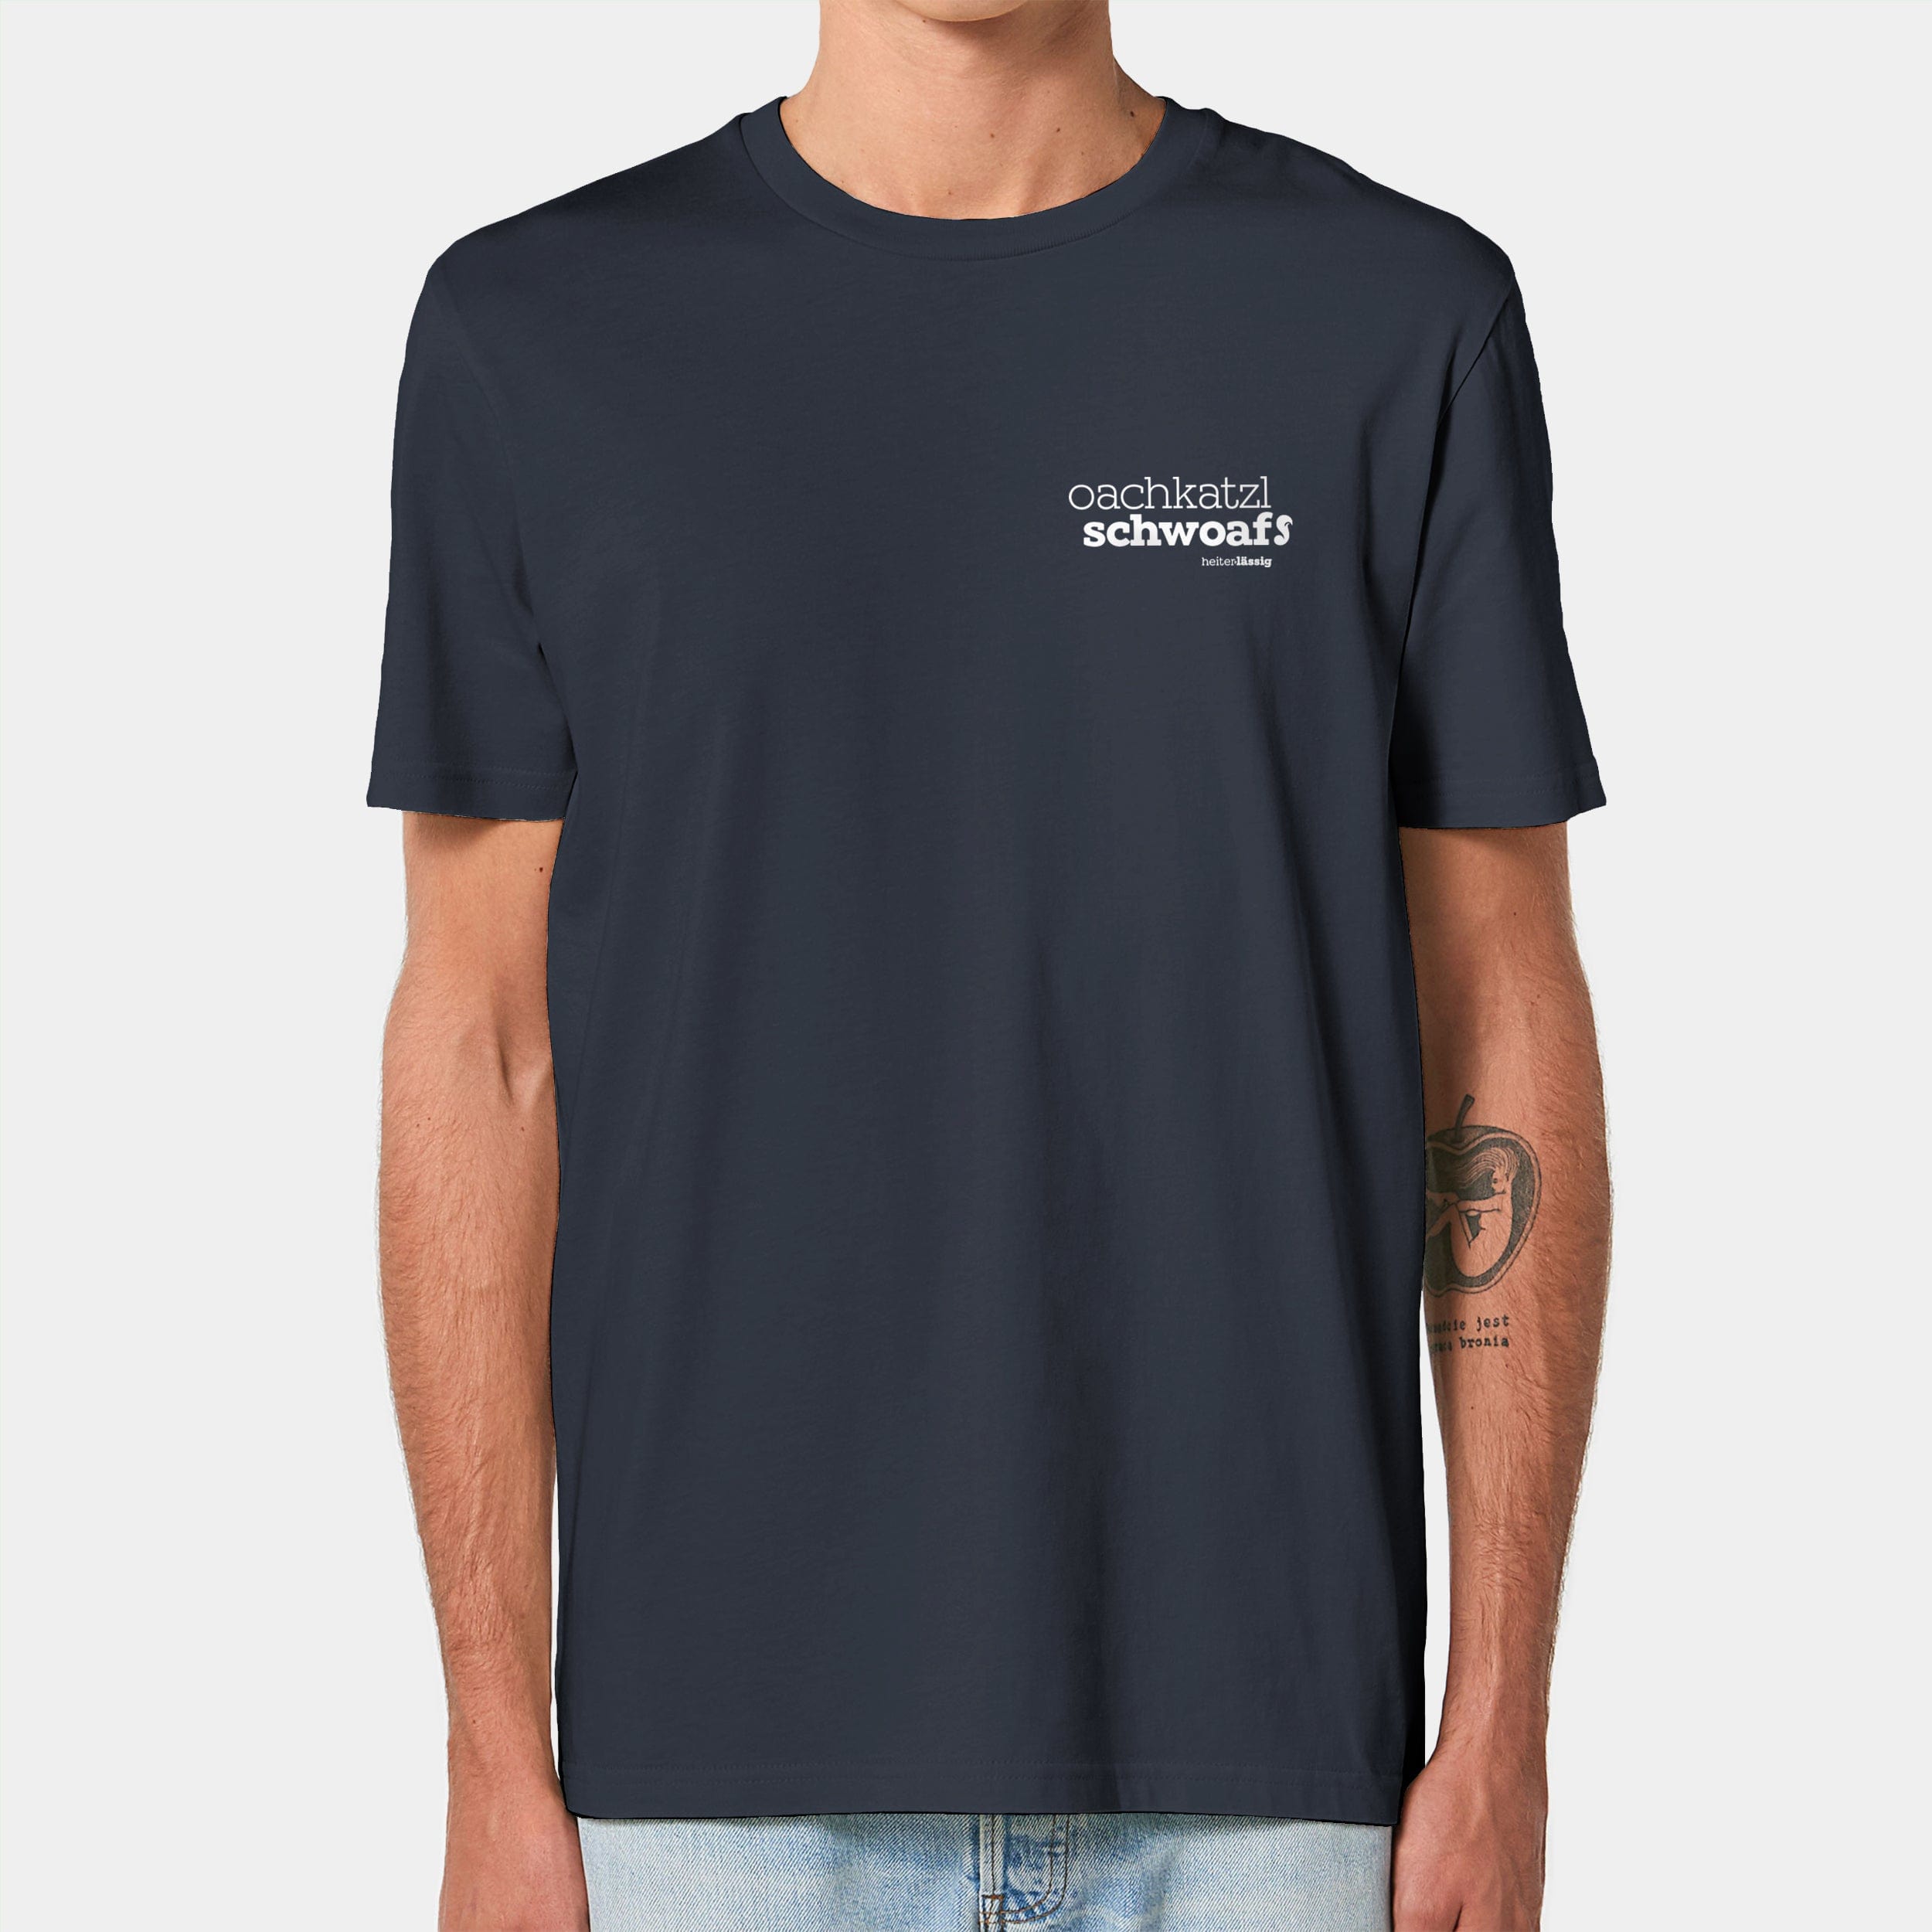 HEITER & LÄSSIG T-Shirt ORIGINAL "oachkatzlschwoaf" XXS / india ink grey - aus nachhaltiger und fairer Produktion